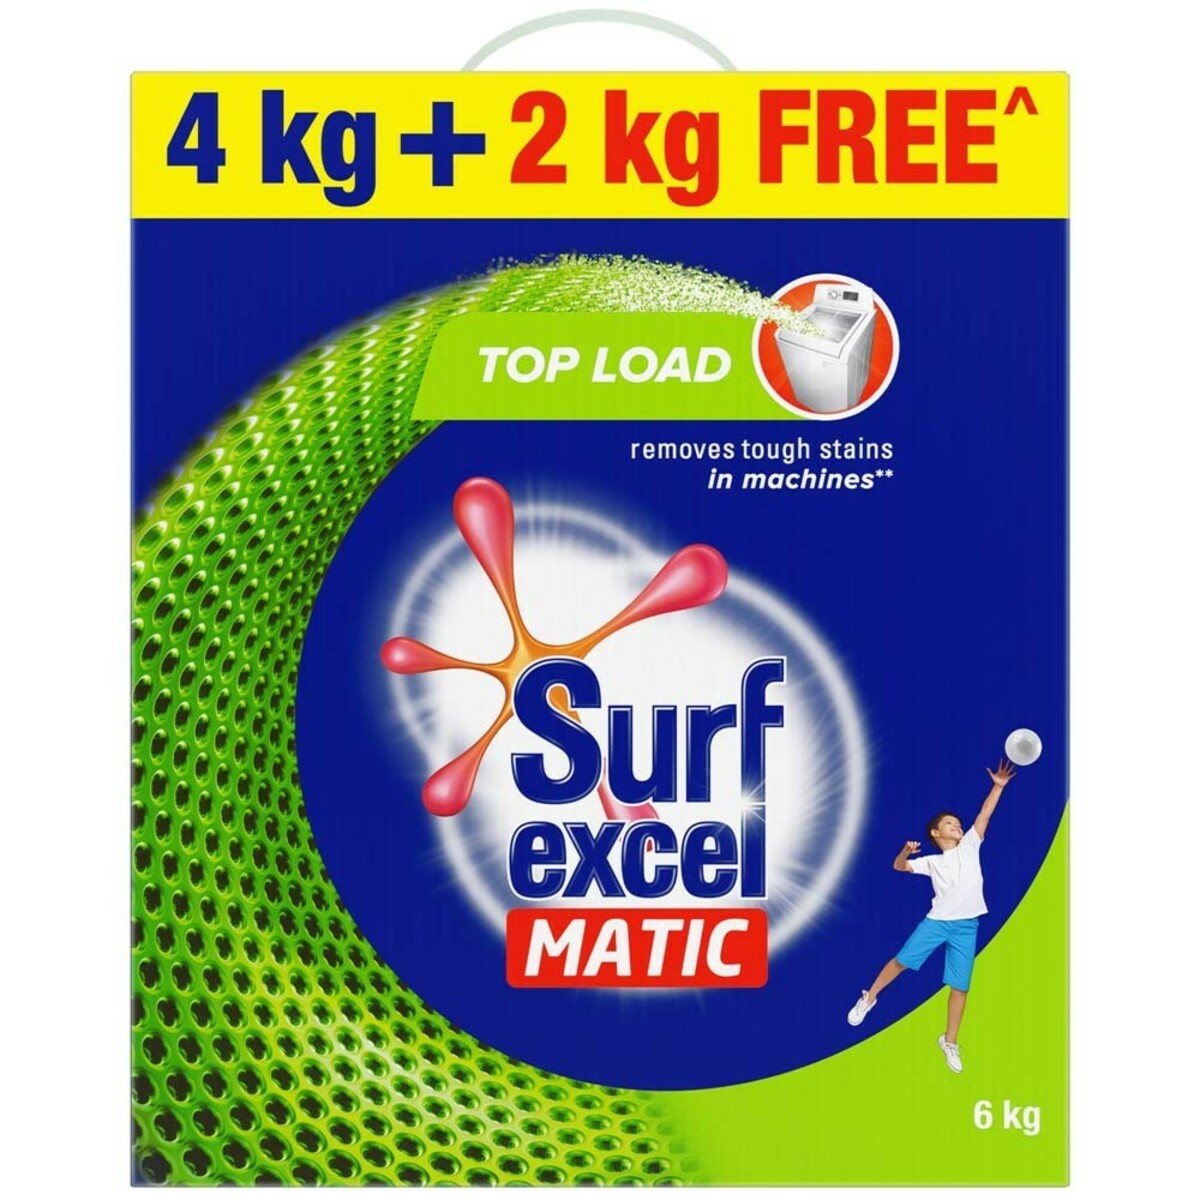 Surf Excel Matic Top Load Powder 4kg + 2kg Free